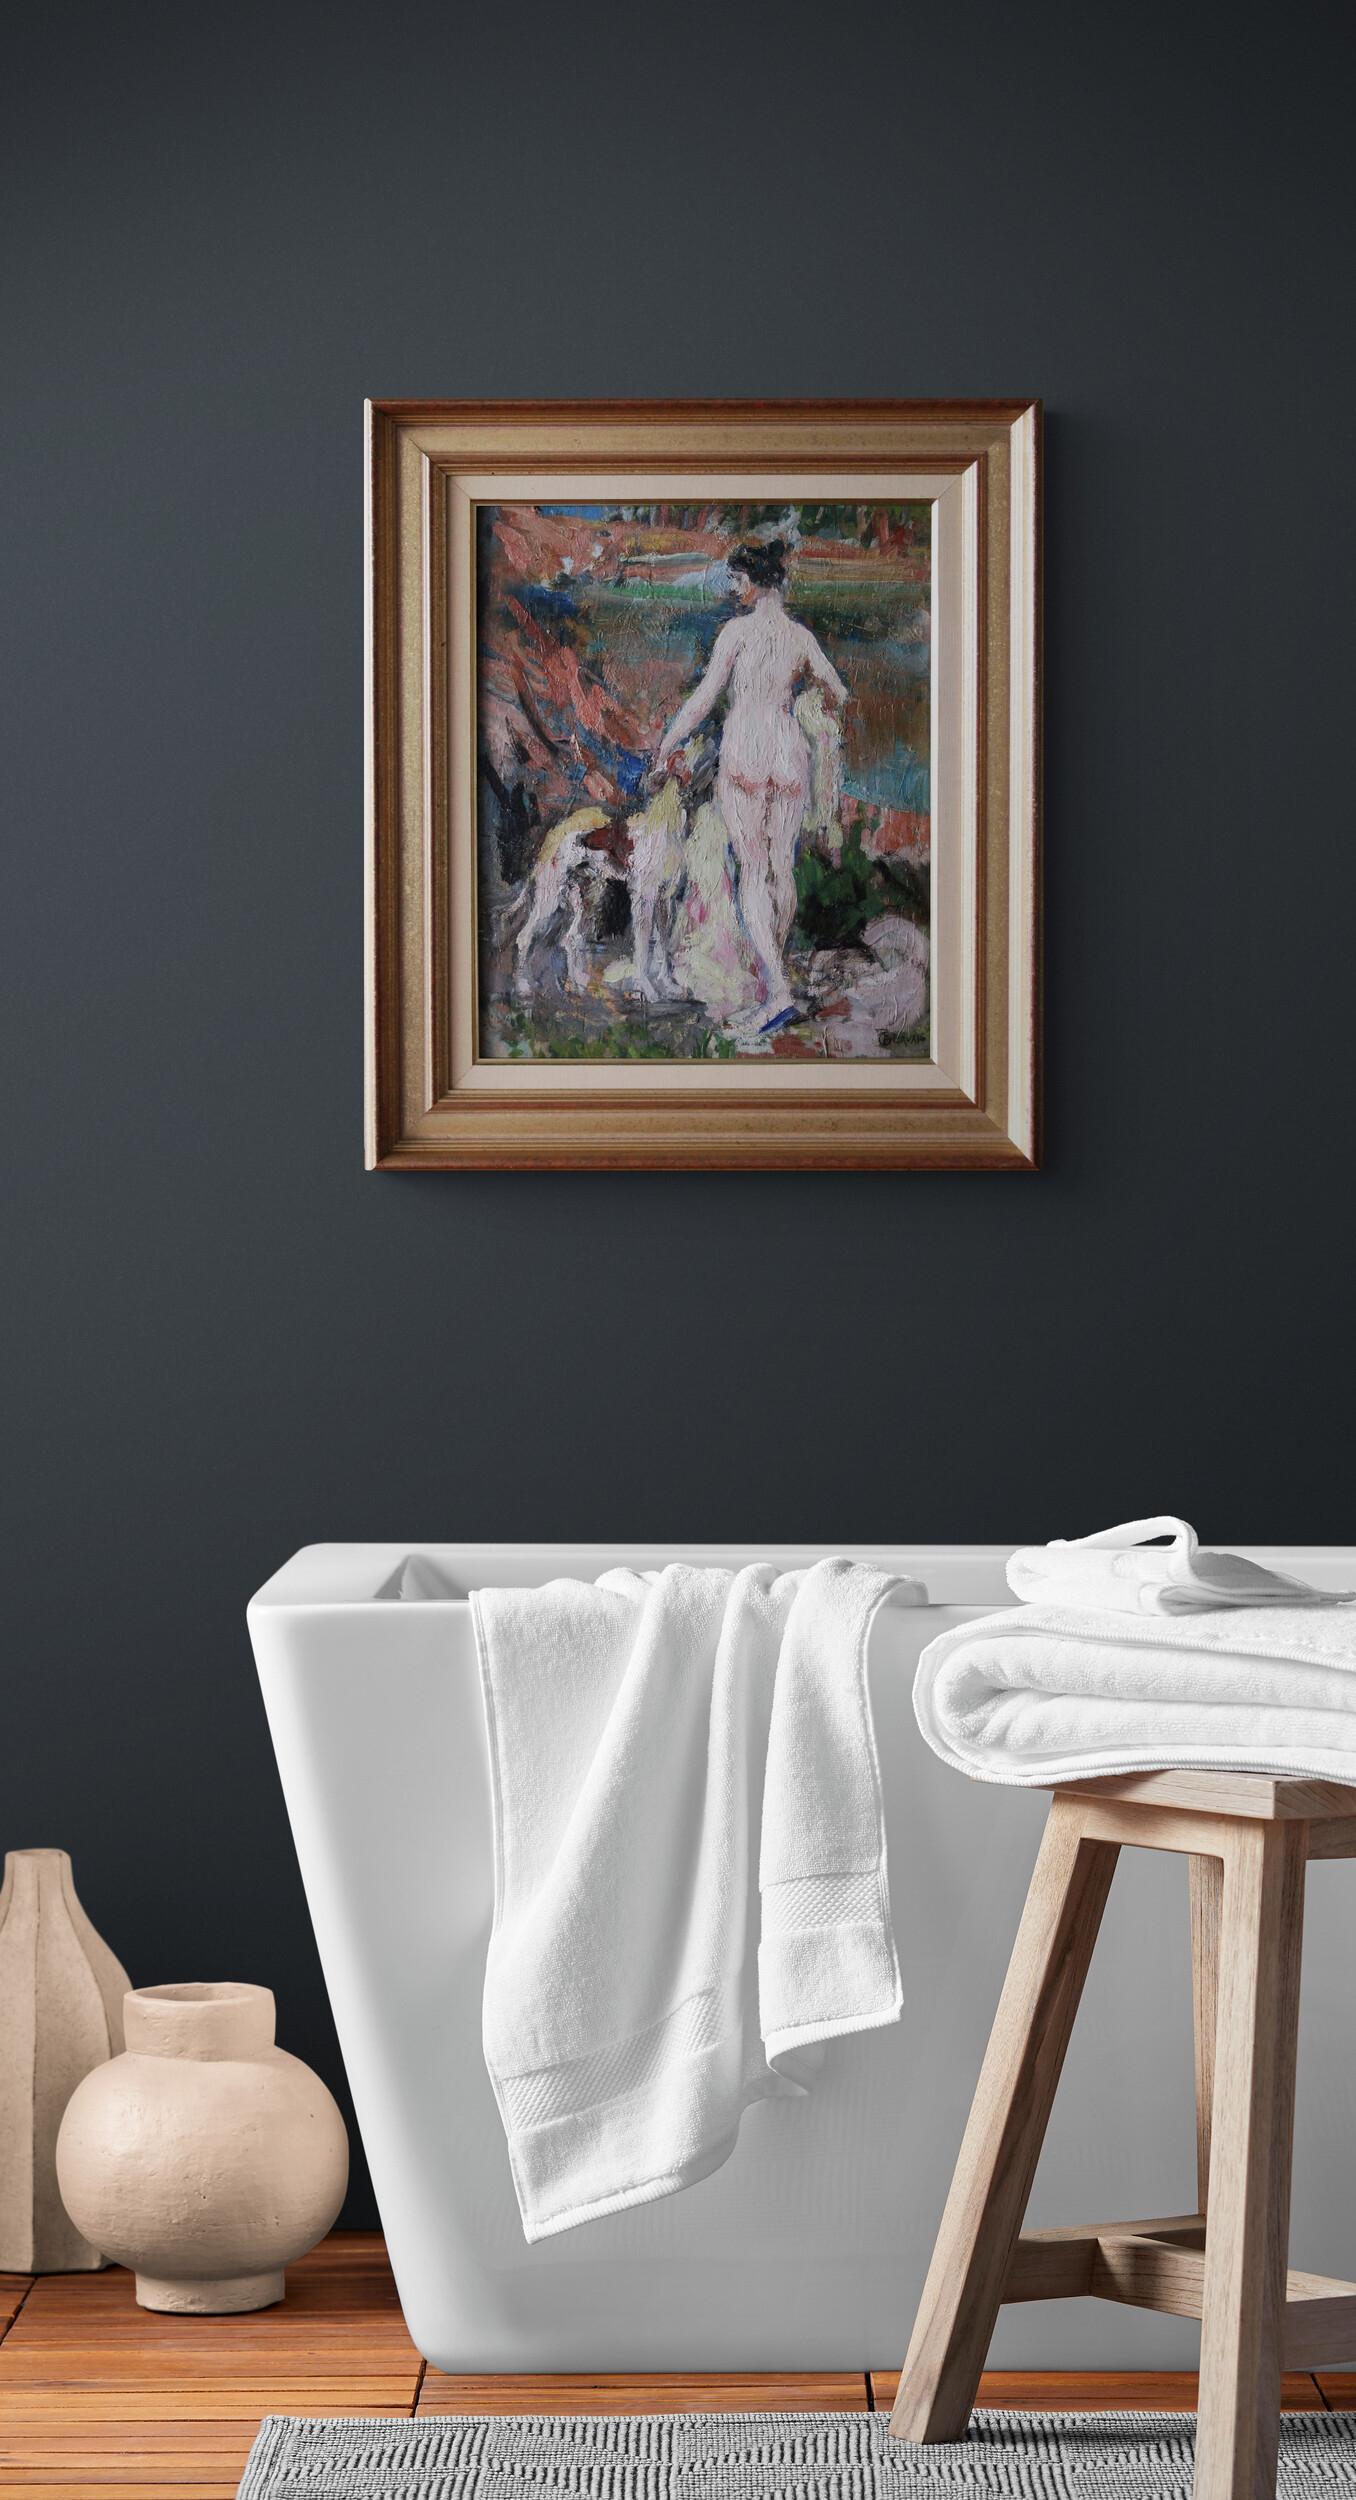 Akt & Hund figurative post-impressionistischen Ölgemälde, Frau & Hund Porträt (Post-Impressionismus), Painting, von Paul Jean Gervais